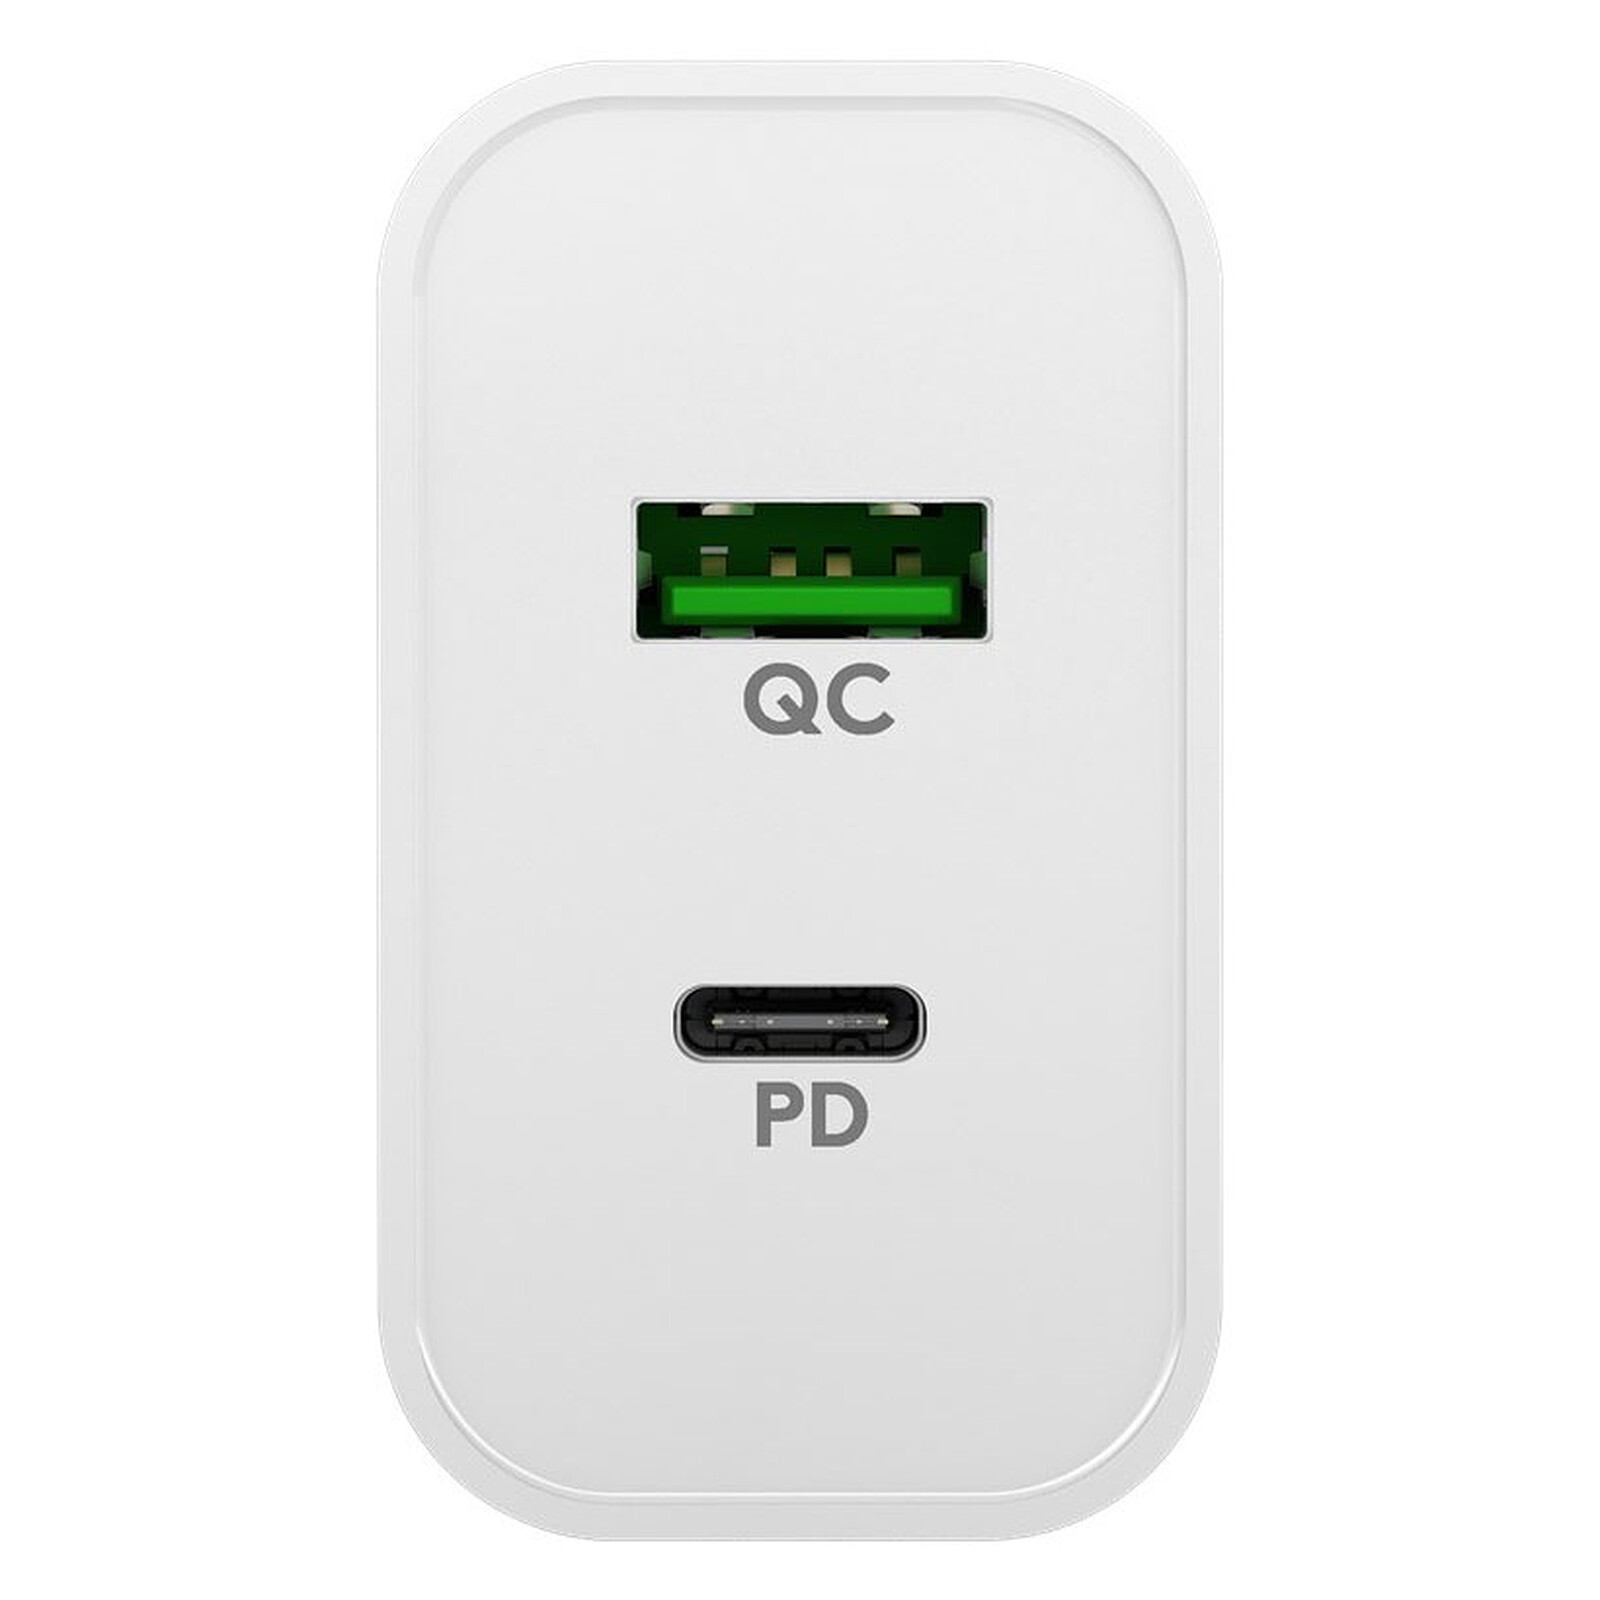 Goobay cargador USB Double 2.4A negro - Cargador de teléfono - LDLC